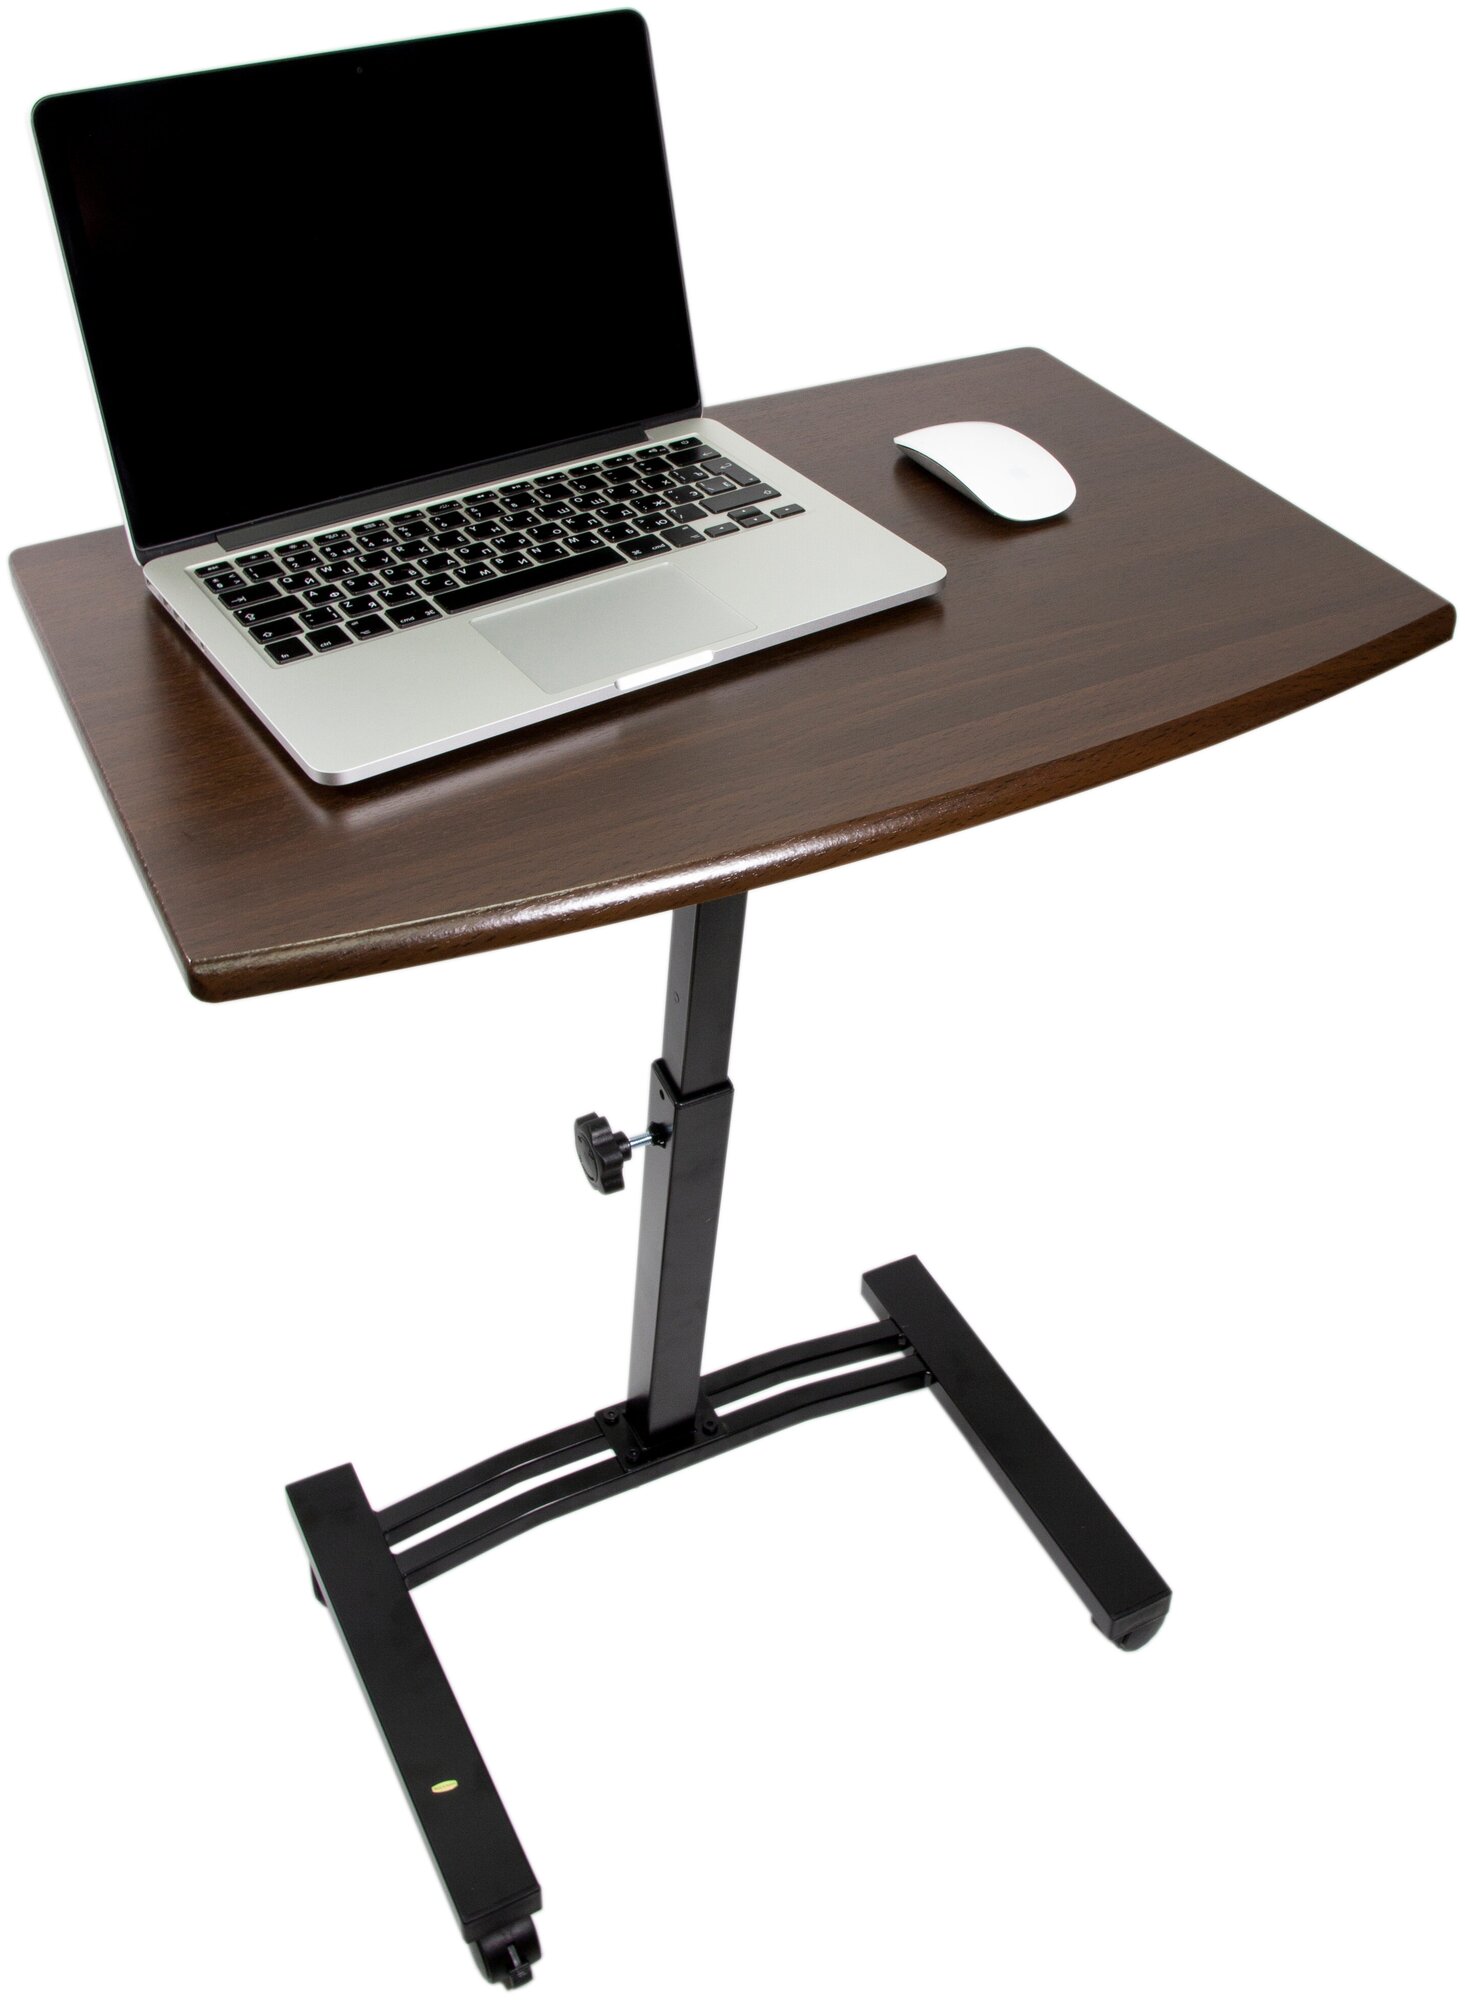 Стол для ноутбука на колёсиках. Детский стол UniStor EDDY мобильный, компьютерный стол, складной стол, подставка под ноутбук